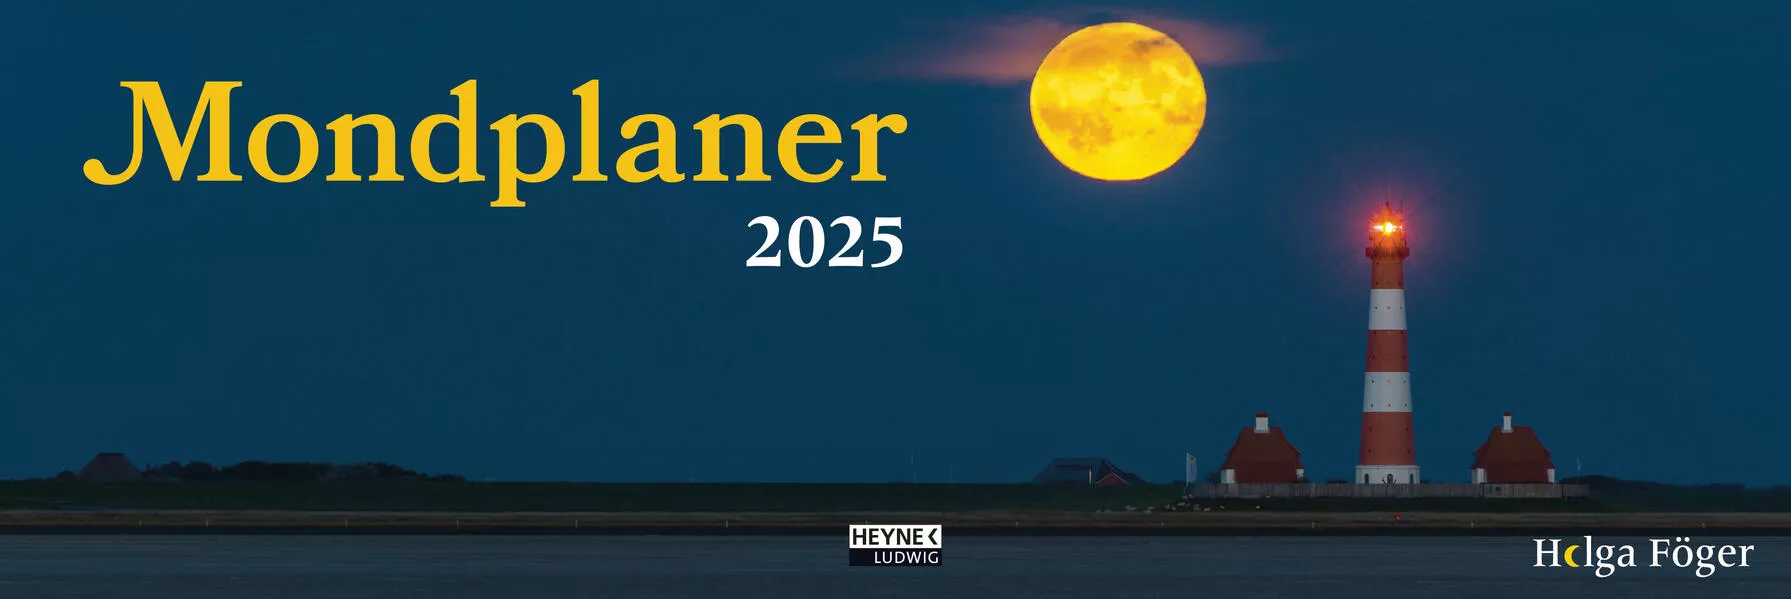 Mondplaner 2025</a>